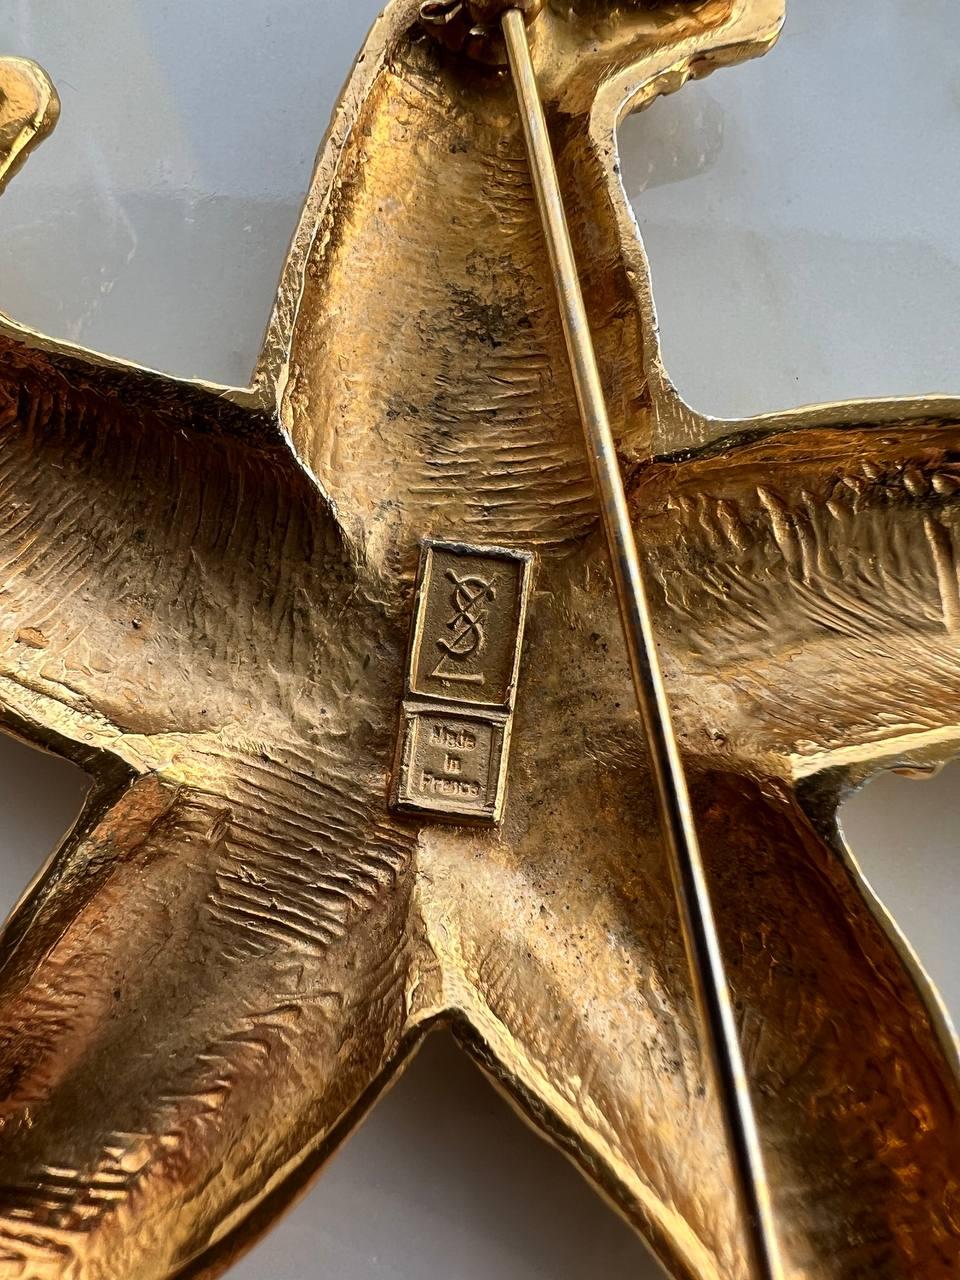 Yves Saint Laurent Vintage Seestern-Brosche

Zeitraum: 1980s 

Gold-Ton Metall

Länge: 2,75″ / 7 cm

Breite: 3″ / 7,6 cm

Designer-Signatur, hergestellt in Frankreich

Zustand - sehr gut

........Zusätzliche Informationen ........

- Das Foto kann